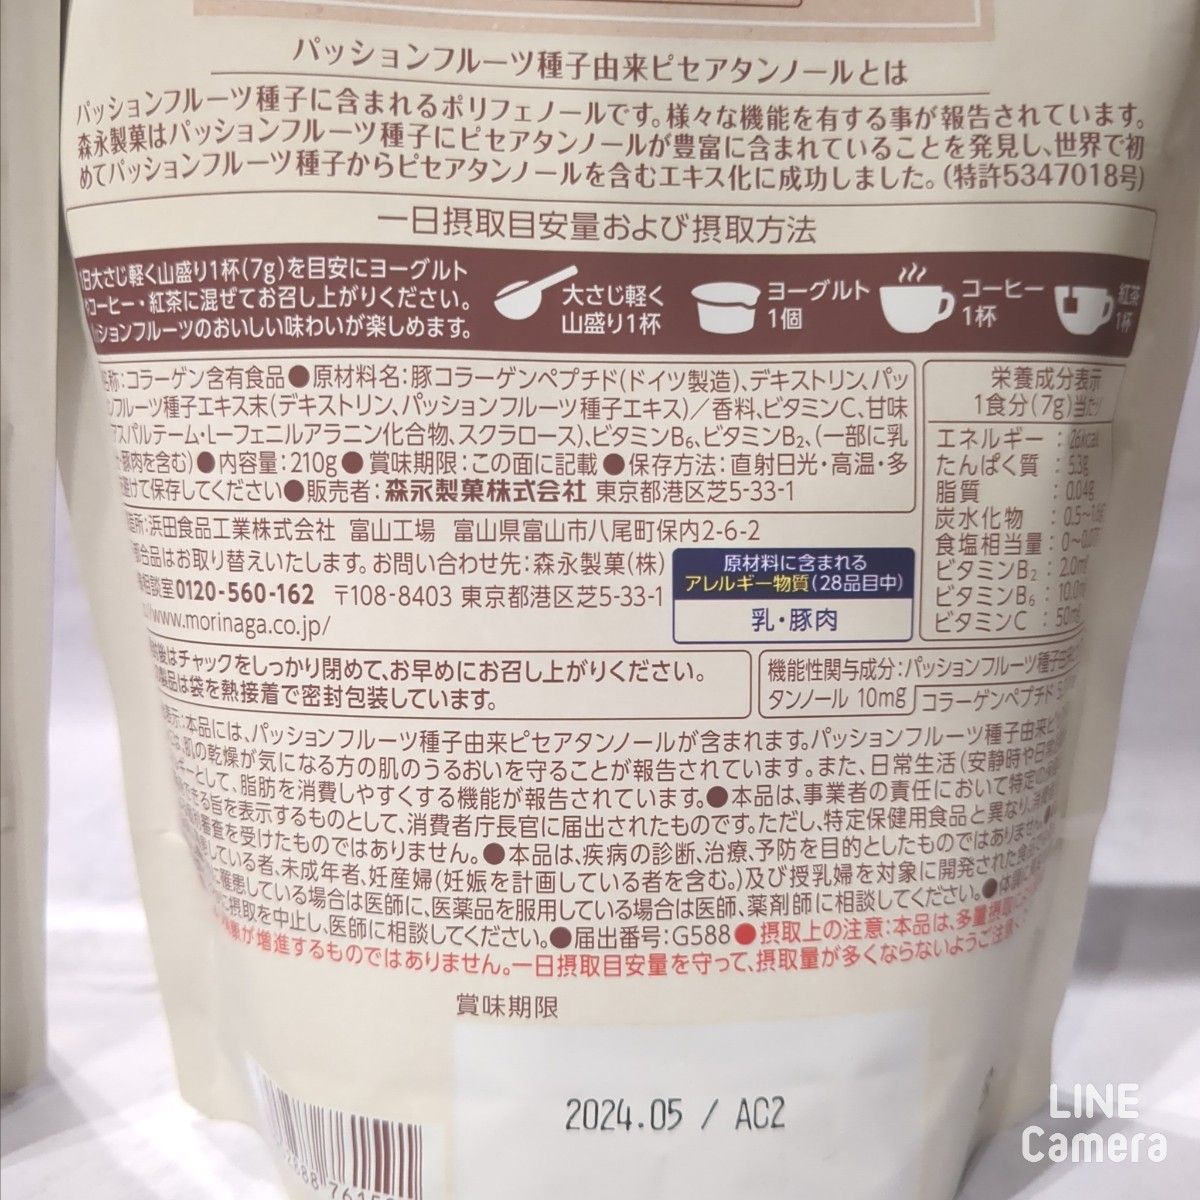 【新品未開封】森永製菓 パッションフルーツLabo パウダー 210g 2コ 機能性表示食品 肌のうるおい 美容